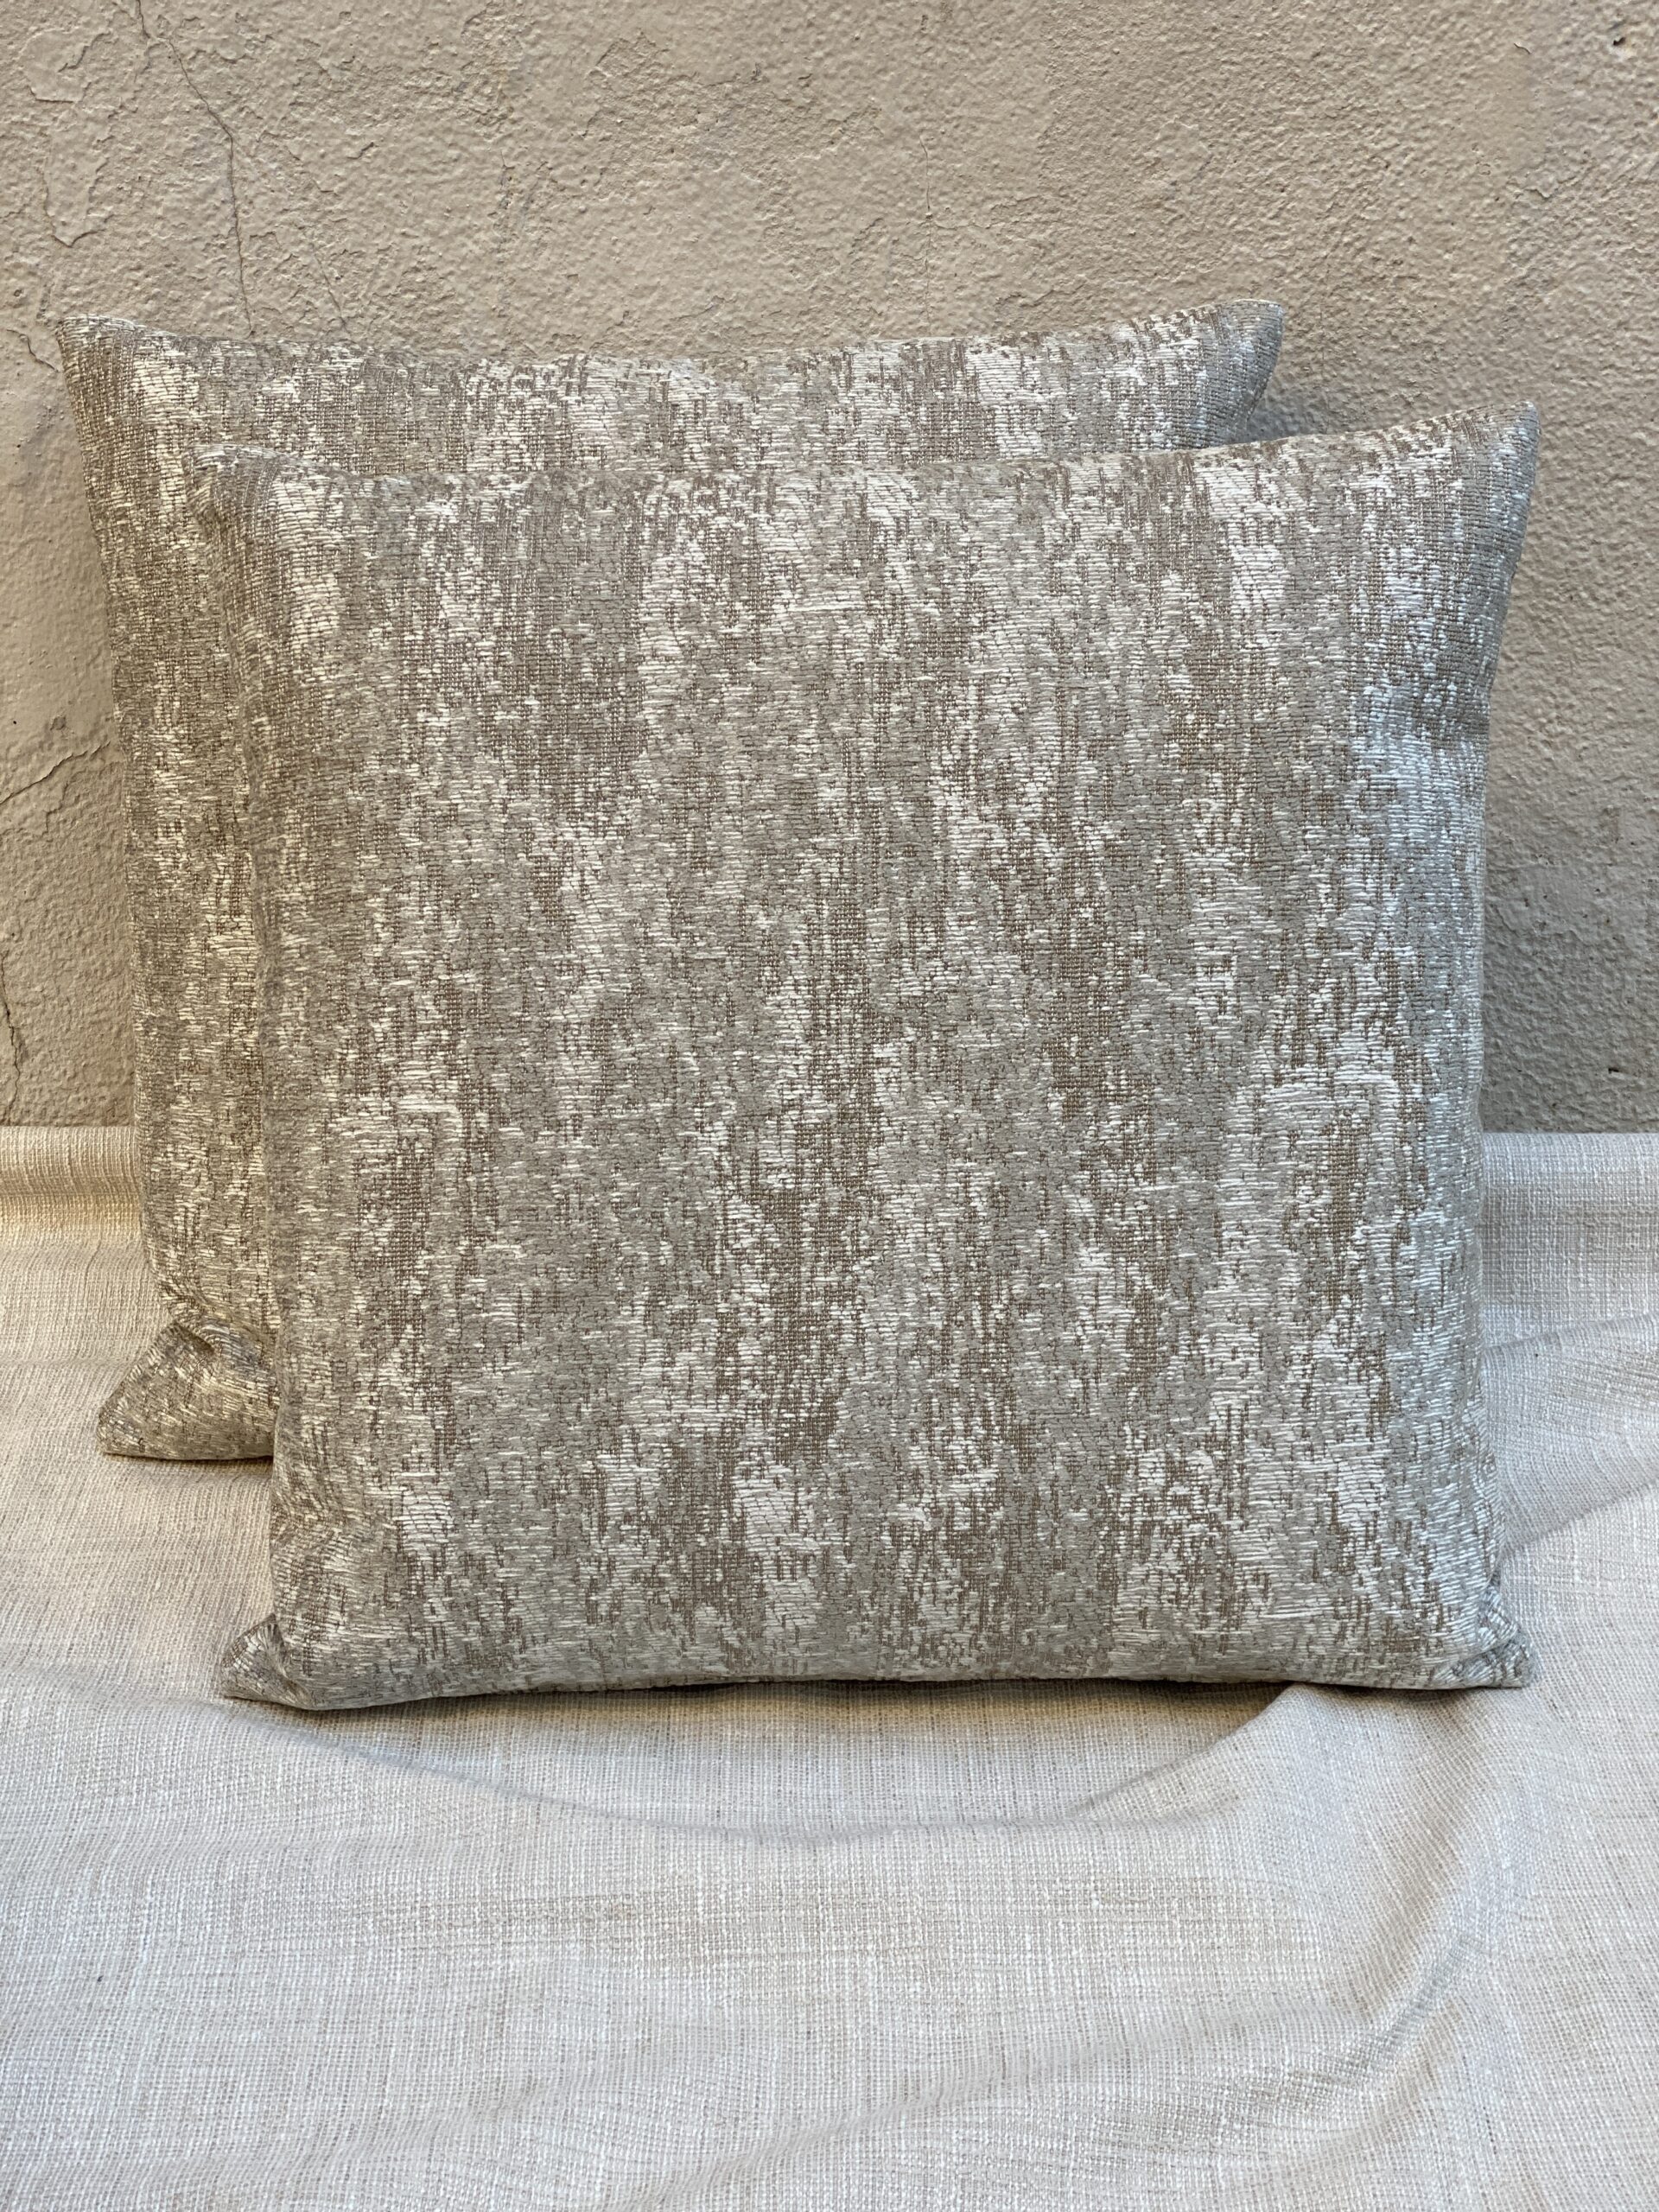 Susan Strauss Design x Zinc Pillows